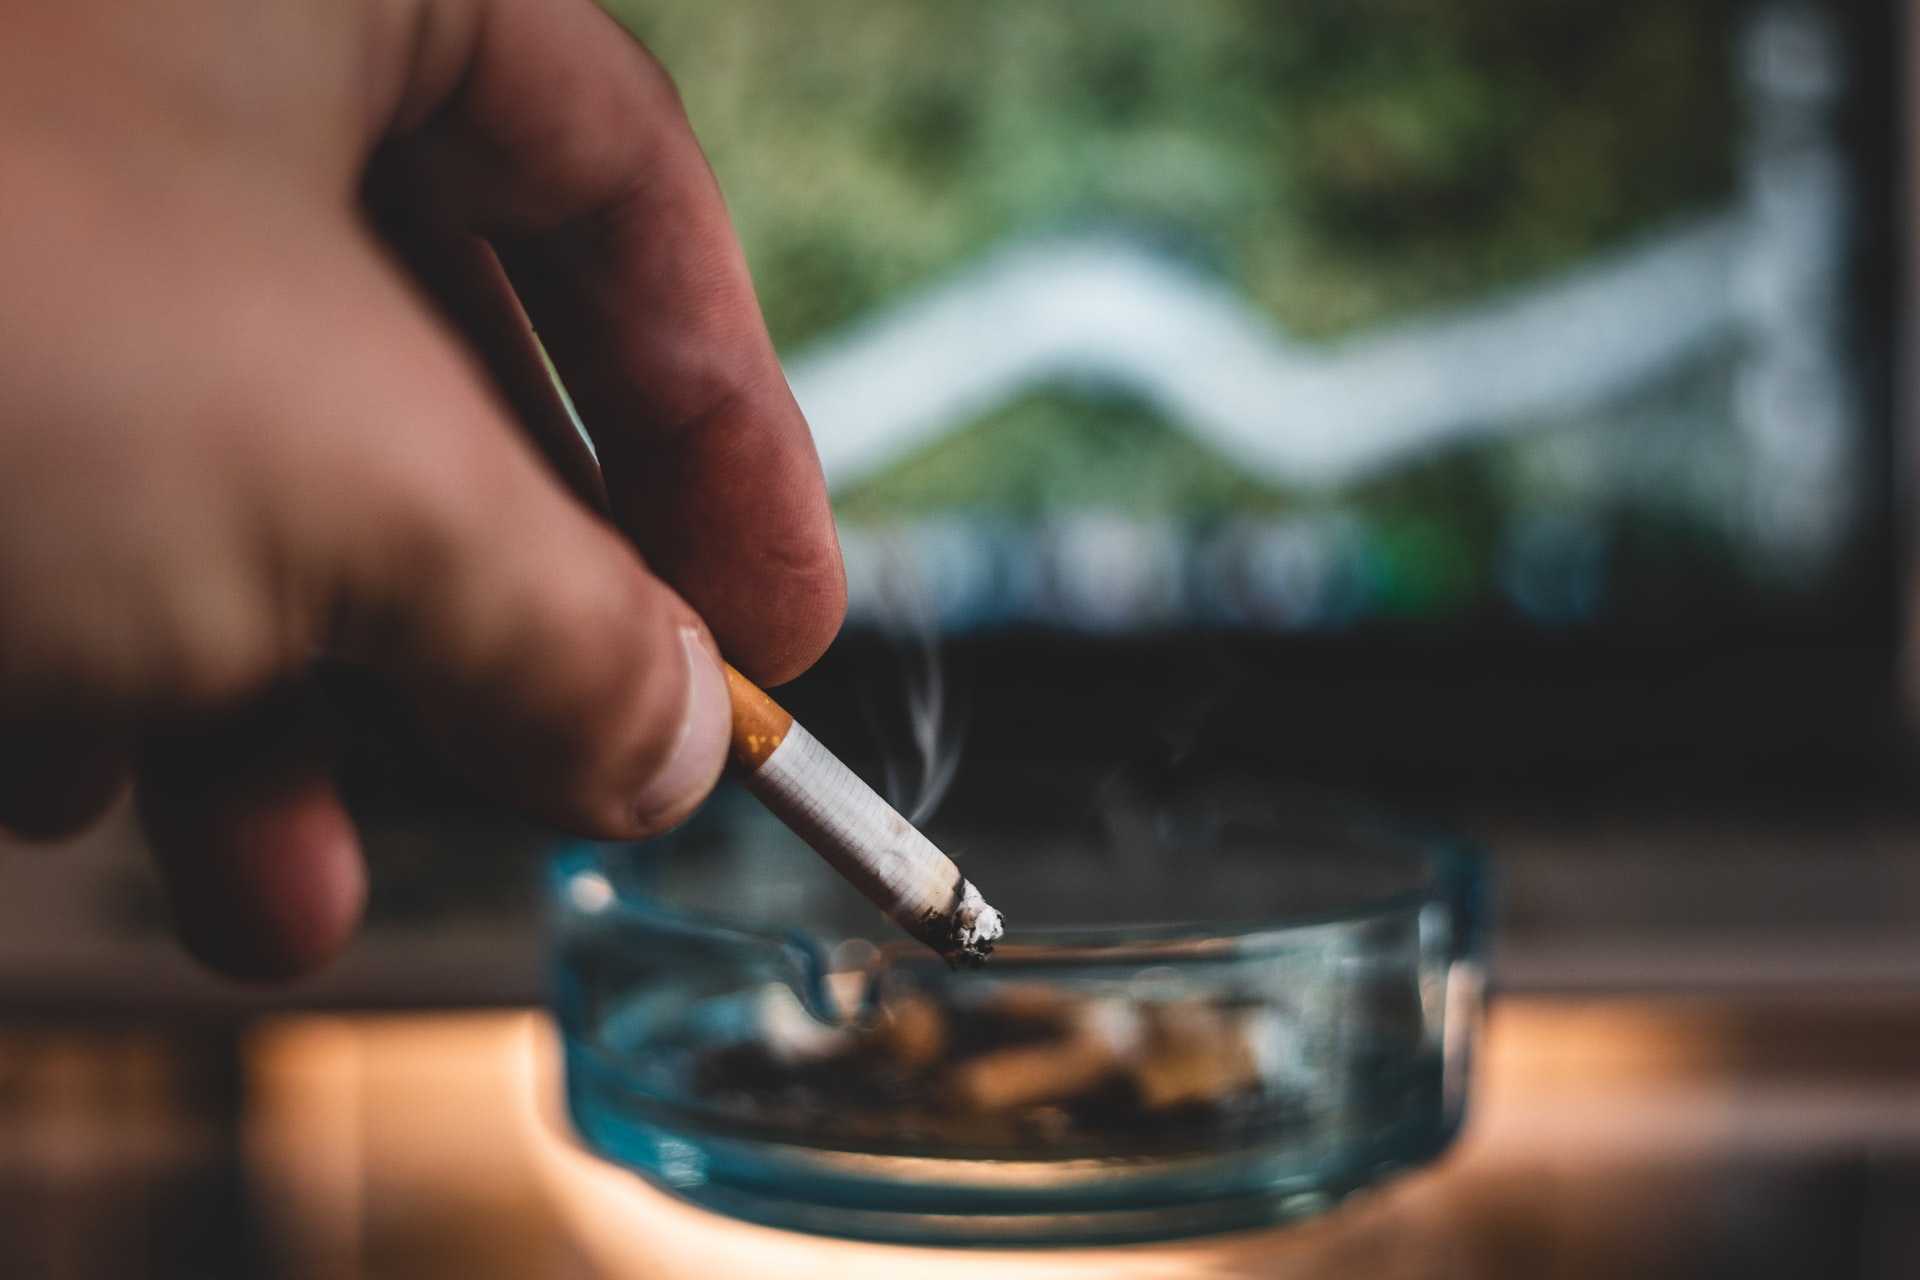 Person holding a cigarette